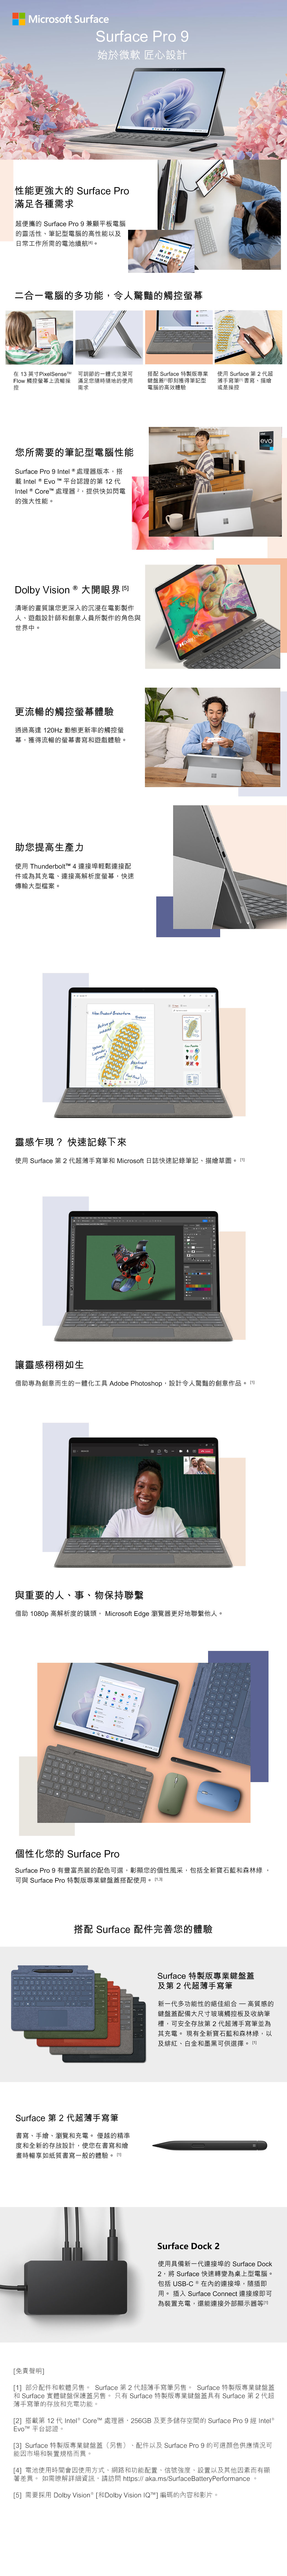 Microsoft SurfaceSurface Pro 9始於微軟 匠心設計性能更強大的 Surface Pro滿足各種需求超便攜的 Surface Pro 9 兼顧平板電腦的靈活性、筆記型電腦的高性能以及日常工作所需的電池續航二合一電腦的多功能,令人驚豔的觸控在 3 英寸PixelSensetM 可調節的一體式支架可low 觸控螢幕上流暢操 滿足您隨時隨地的使用控需求搭配 Surface 特製版專業鍵盤蓋即刻獲得筆記型電腦的高效體驗您所需要的筆記型電腦性能Surface Pro 9 ntel  處理器版本,搭載 Intel  vo  平台認證的第  Intel  e 處理器,提供快如閃電的強大性能。Dolby ision ® 大開眼界清晰的畫質讓您更深入的沉浸在電影製作人、遊戲設計師創意人員所製作的角色與世界中。更流暢的觸控螢幕體驗通過高達 20Hz 動態更新率的觸控螢幕,獲得流暢的螢幕書寫遊戲體驗。助您提高生產力使用 Thunderbolt 4 連接埠輕鬆連接配件或為其充電、連接高解析度螢幕,快速傳輸大型檔案。 V New Product BrainstormActive yetsubduedLavendaryGreenAbstract F使用 Surface 第2代超薄手寫筆I 書寫、描繪或是操控Dolby VisionSDR   Tread 靈感乍現?快速記錄下來C使用 Surface 第2代超薄手寫筆和 Microsoft 日誌快速記錄筆記、描繪草圖。0Eintelevo讓靈感栩栩如生借助專為創意而生的一體化工具 Adobe Photoshop,設計令人驚豔的創意作品。 與重要的人、事、物保持聯繫借助 1080p 高解析度的鏡頭, Microsoft Edge 瀏覽器更好地聯繫他人。1 or個性化您的 Surface ProSurface Pro 9 有豐富亮麗的配色可選,彰顯您的個性風采,包括全新寶石藍和森林綠,可與 Surface Pro 特製版專業鍵盤蓋搭配使用。 1,3搭配 Surface 配件完善您的體驗Surface 第 2 代超薄手寫筆書寫、手繪、瀏覽和充電。 優越的精準度和全新的存放設計,使您在書寫和繪畫時暢享如紙質書寫一般的體驗。1Surface 特製版專業鍵盤蓋及第2代超薄手寫筆新一代多功能性的絕佳組合 高質感的鍵盤蓋配備大尺寸玻璃觸控板及收納筆槽,可安全存放第2代超薄手寫筆並為其充電。 現有全新寶石藍和森林綠,以及緋紅、白金和墨黑可供選擇。1]Surface Dock 2使用具備新一代連接埠的 Surface Dock2,將 Surface 快速轉變為桌上型電腦。包括 USB-C ® 在內的連接埠,隨插即用。 插入 Surface Connect 連接線即可為裝置充電,還能連接外部顯示器[[免責聲明][1] 部分配件和軟體另售。 Surface 第2 代超薄手寫筆另售。 Surface 特製版專業鍵盤蓋和 Surface 實體鍵盤保護蓋另售。 只有 Surface 特製版專業鍵盤蓋具有 Surface 第 2 代超薄手寫筆的存放和充電功能。[2] 搭載第 12 代Intel® Core™ 處理器,256GB 及更多儲存空間的 Surface Pro 9 經 Intel®Evo™ 平台認證。[3] Surface 特製版專業鍵盤蓋(另售) 配件以及 Surface Pro 9 的可選顏色供應情況可能因市場和裝置規格而異。[4] 電池使用時間會因使用方式、網路和功能配置、信號強度、設置以及其他因素而有顯著差異。 如需瞭解詳細資訊,請訪問 https://aka.ms/SurfaceBatteryPerformance。[5] 需要採用 Dolby Vision® [和Dolby Vision IQ™] 編碼的內容和影片。